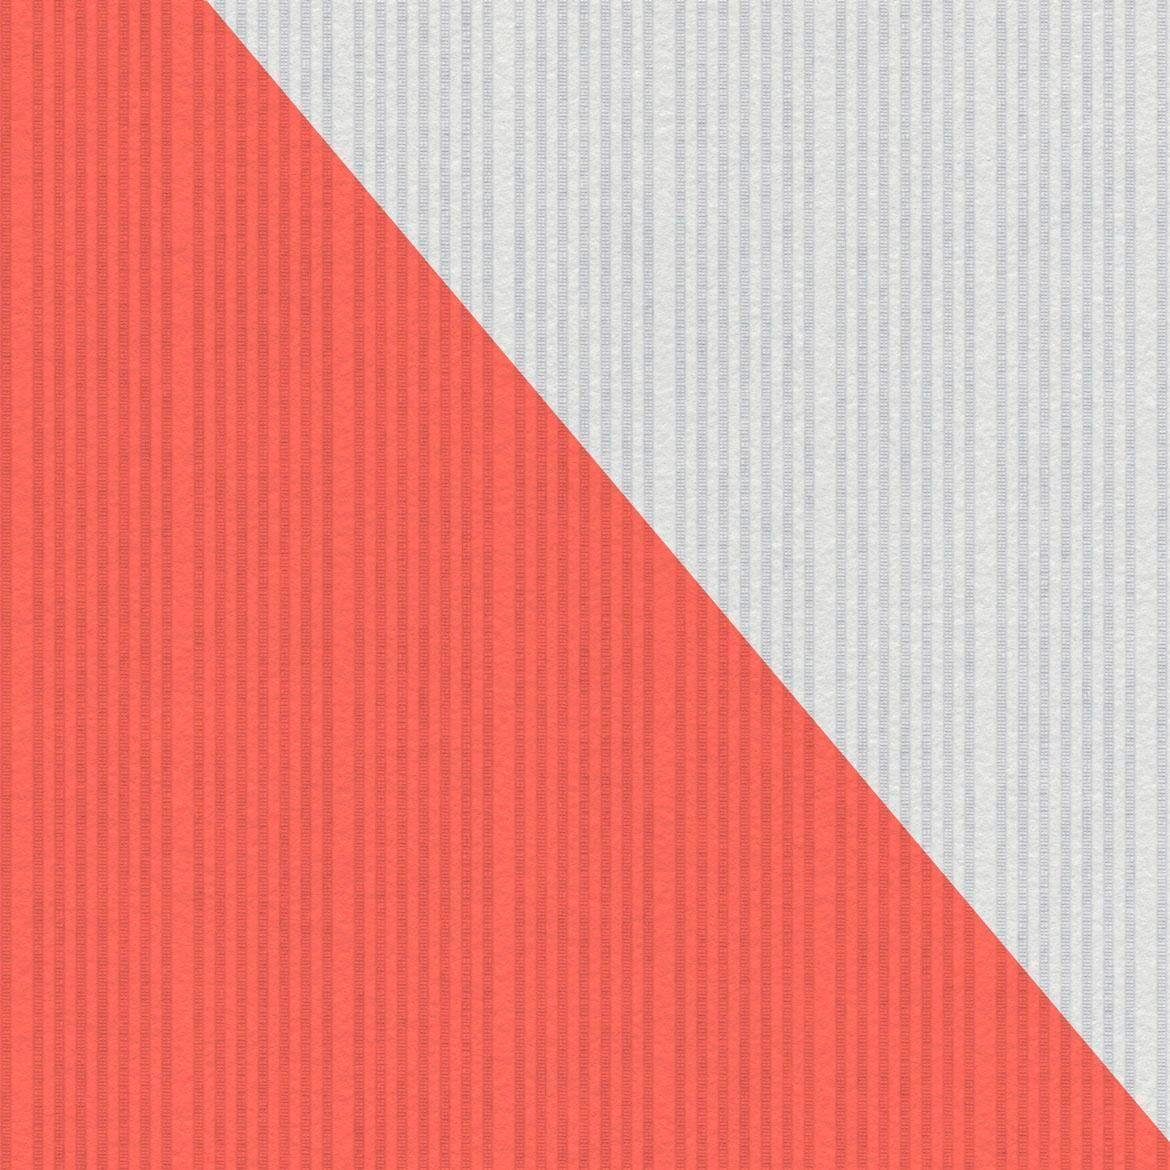 Weiß Création Streifen Vliestapete Überstreichbar gestreift, Meistervlies, A.S. Struktur Tapete Streifen,